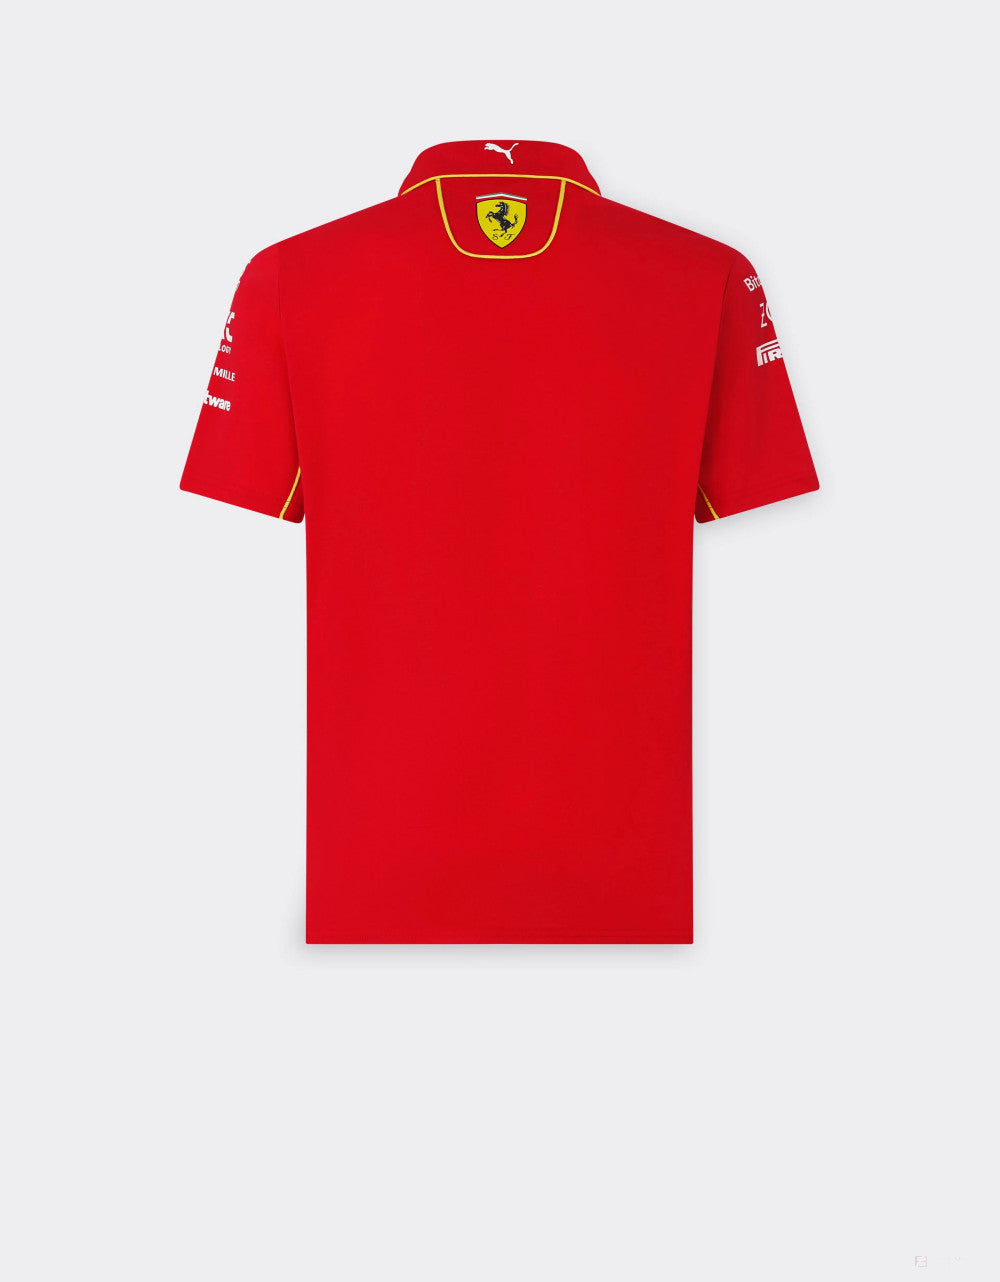 Ferrari tričko s límečkem, Puma, týmové, červená, 2024